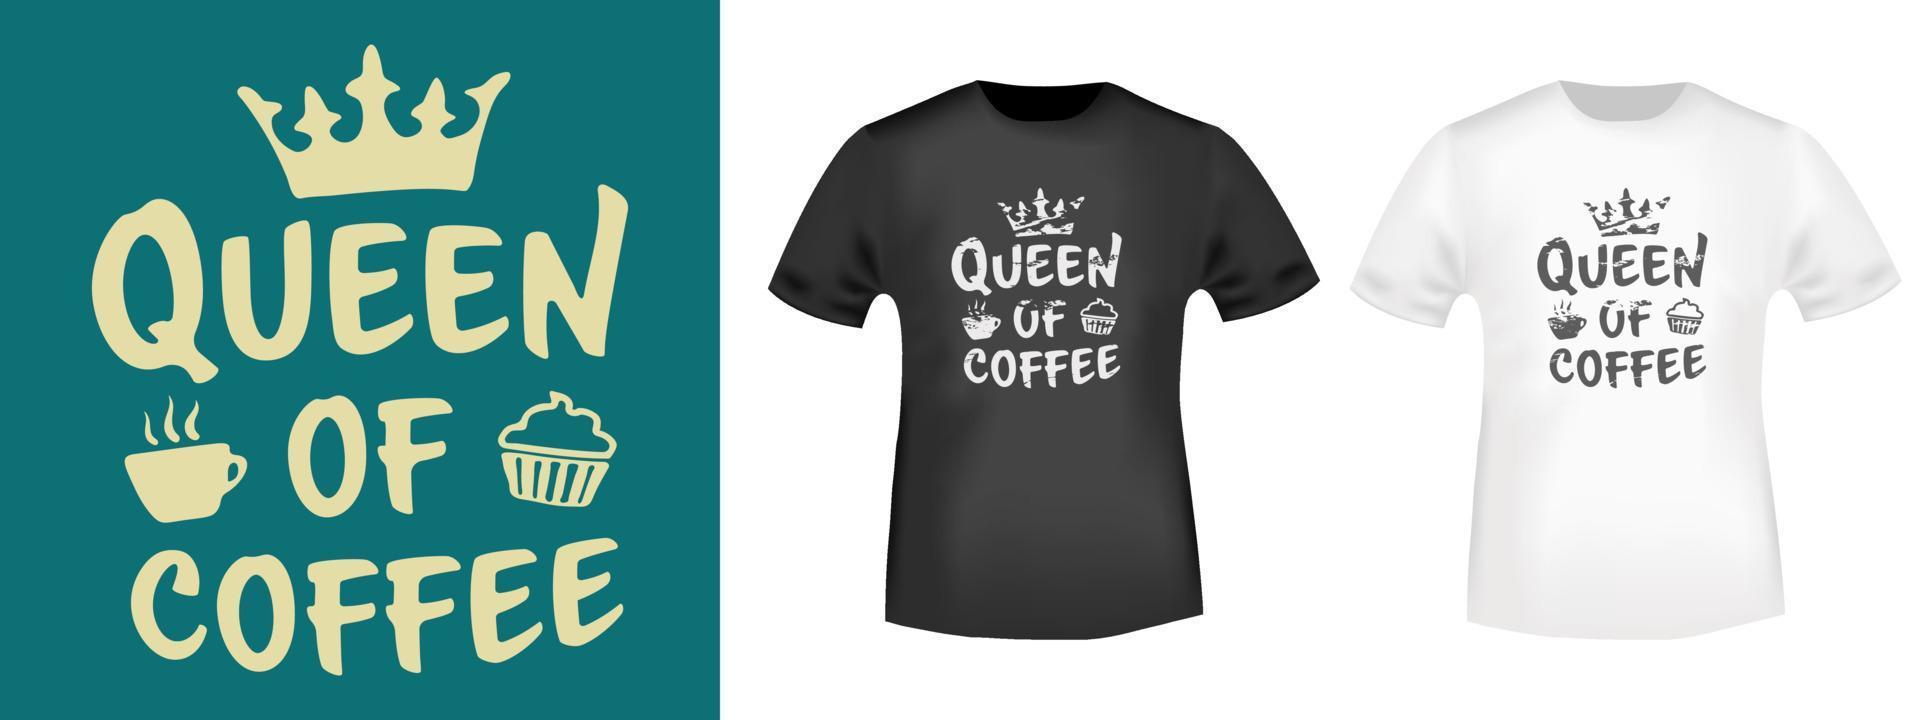 Typografie-Design der Königin des Kaffees für T-Shirt-Briefmarken, T-Shirt-Druck, Applikationen, Abzeichen, Etikettenkleidung oder andere Druckprodukte. Vektor-Illustration. vektor